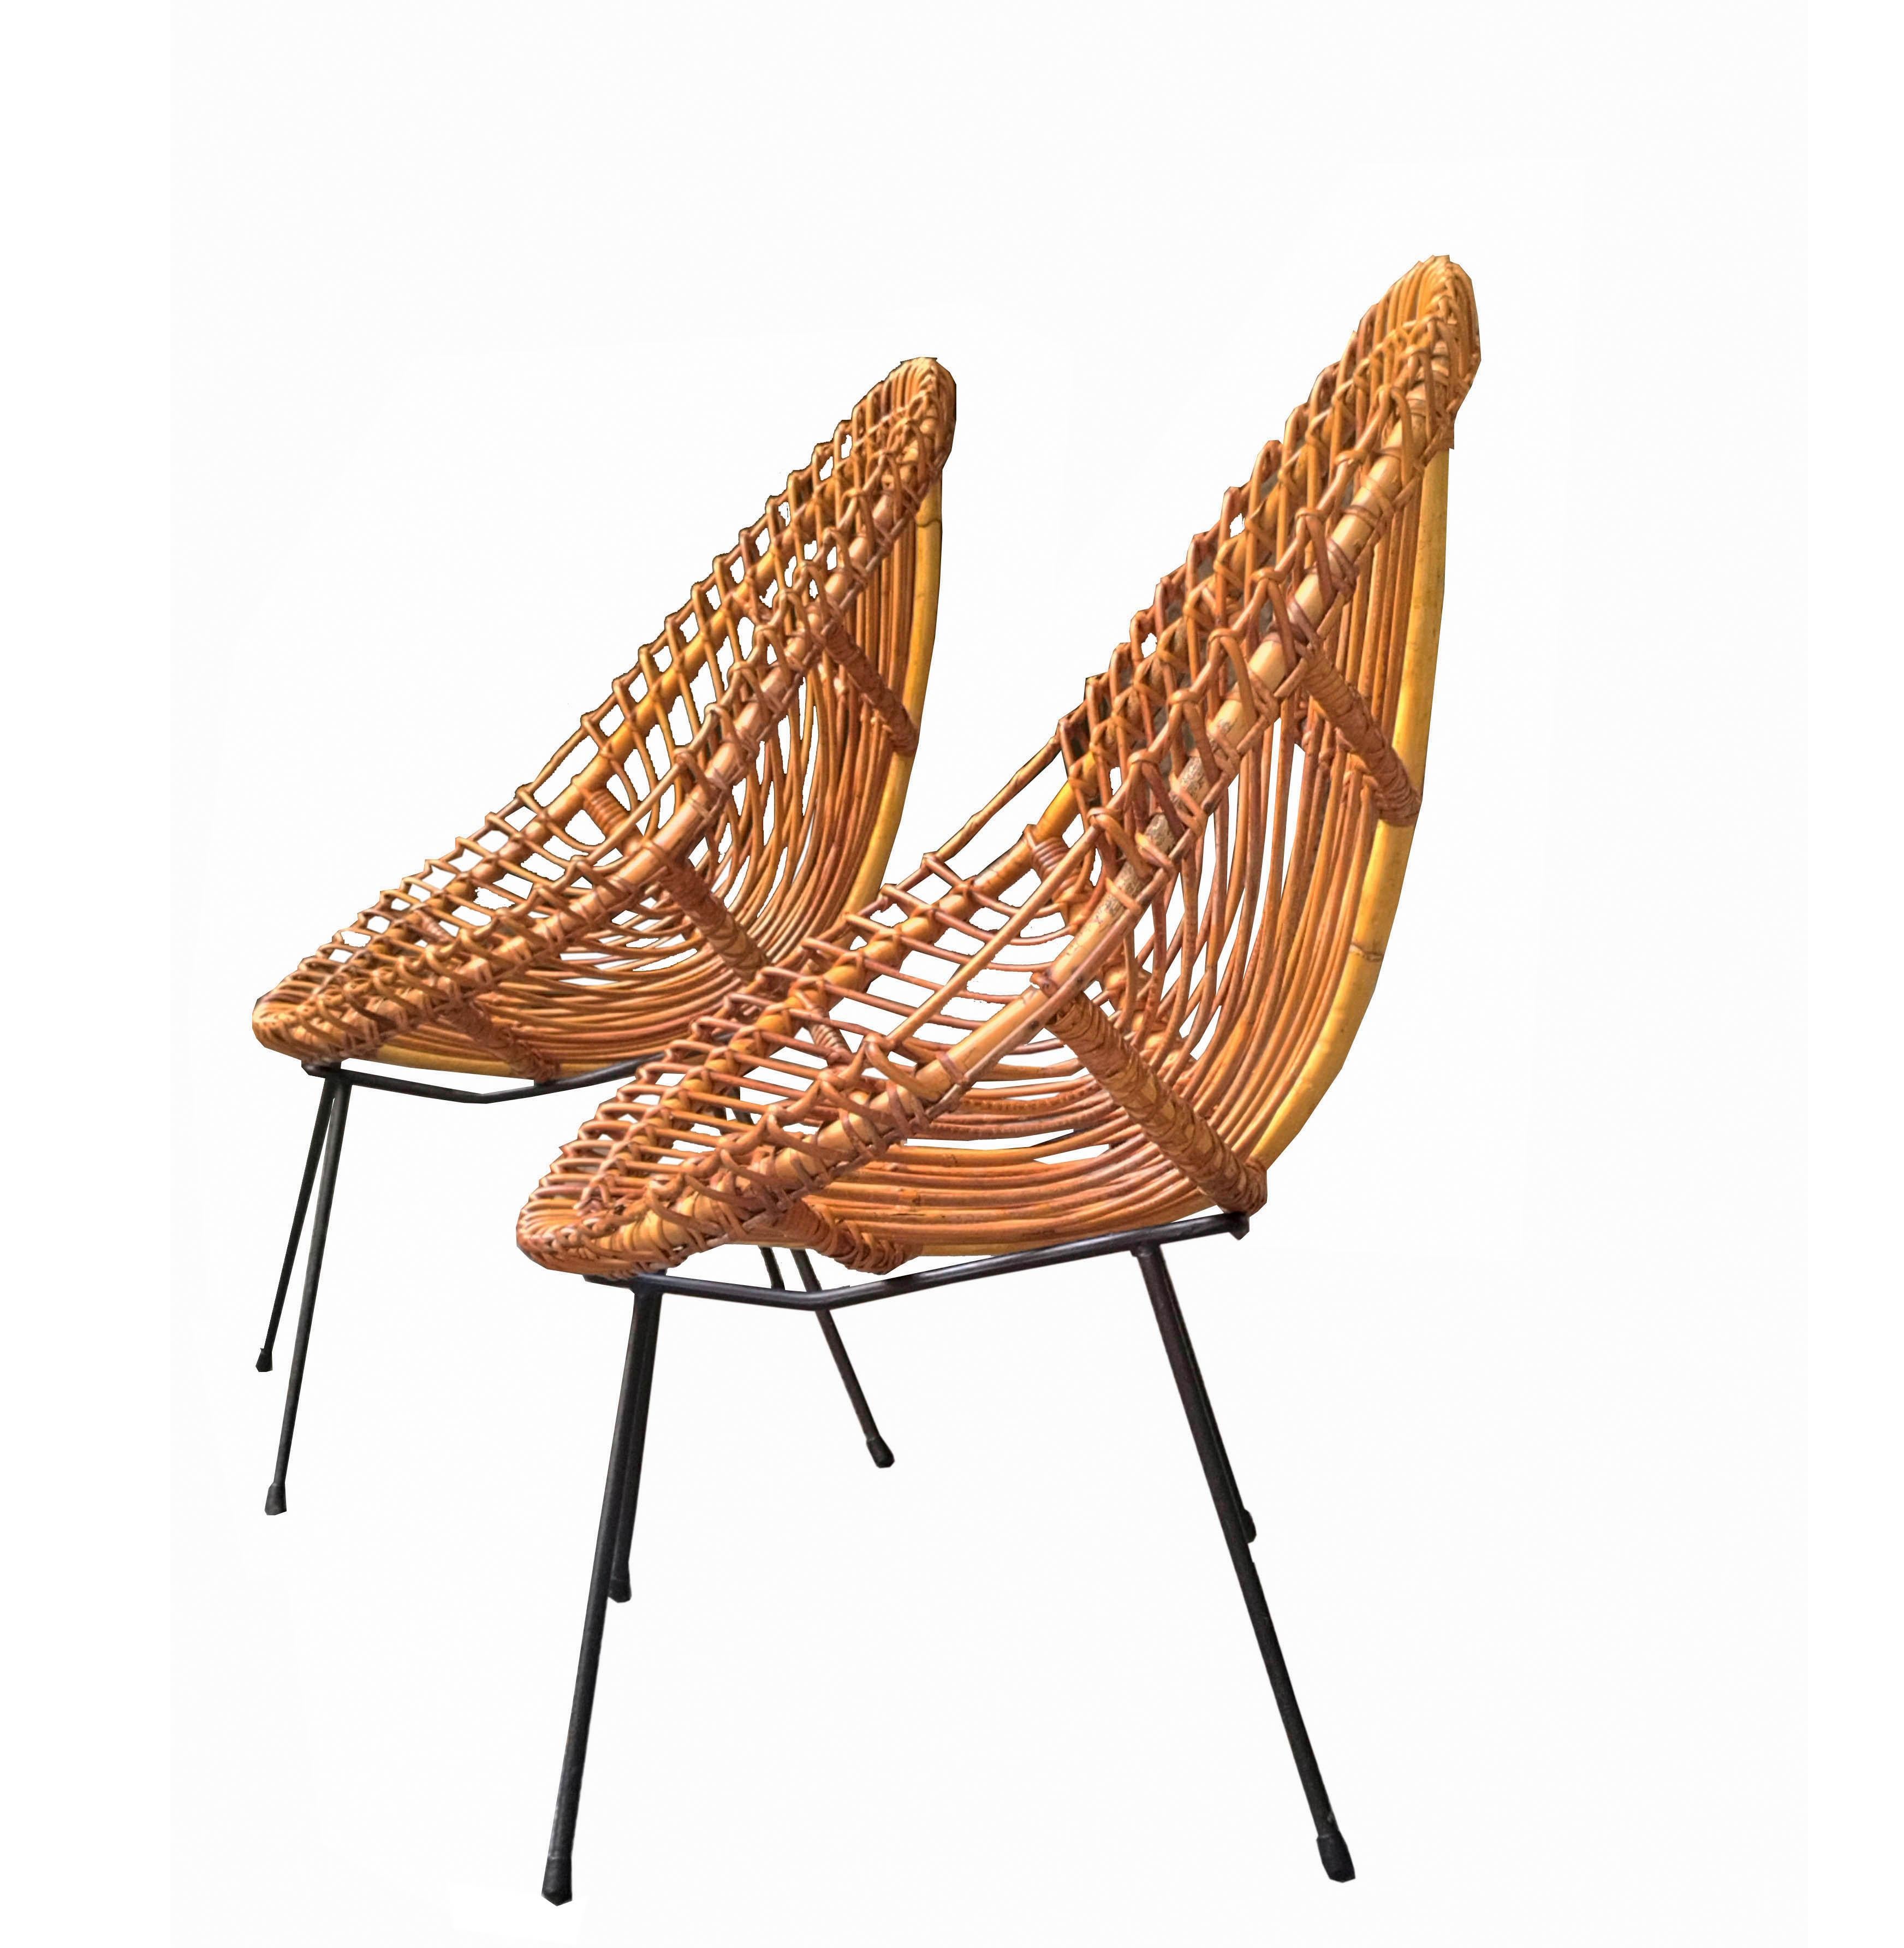 Ein Paar Sessel, entworfen von Franco Albini in den 1960er Jahren. Leichte und bequeme schalenförmige Sitze aus Rattan. Schwarz lackierter Metallrohrsockel. 